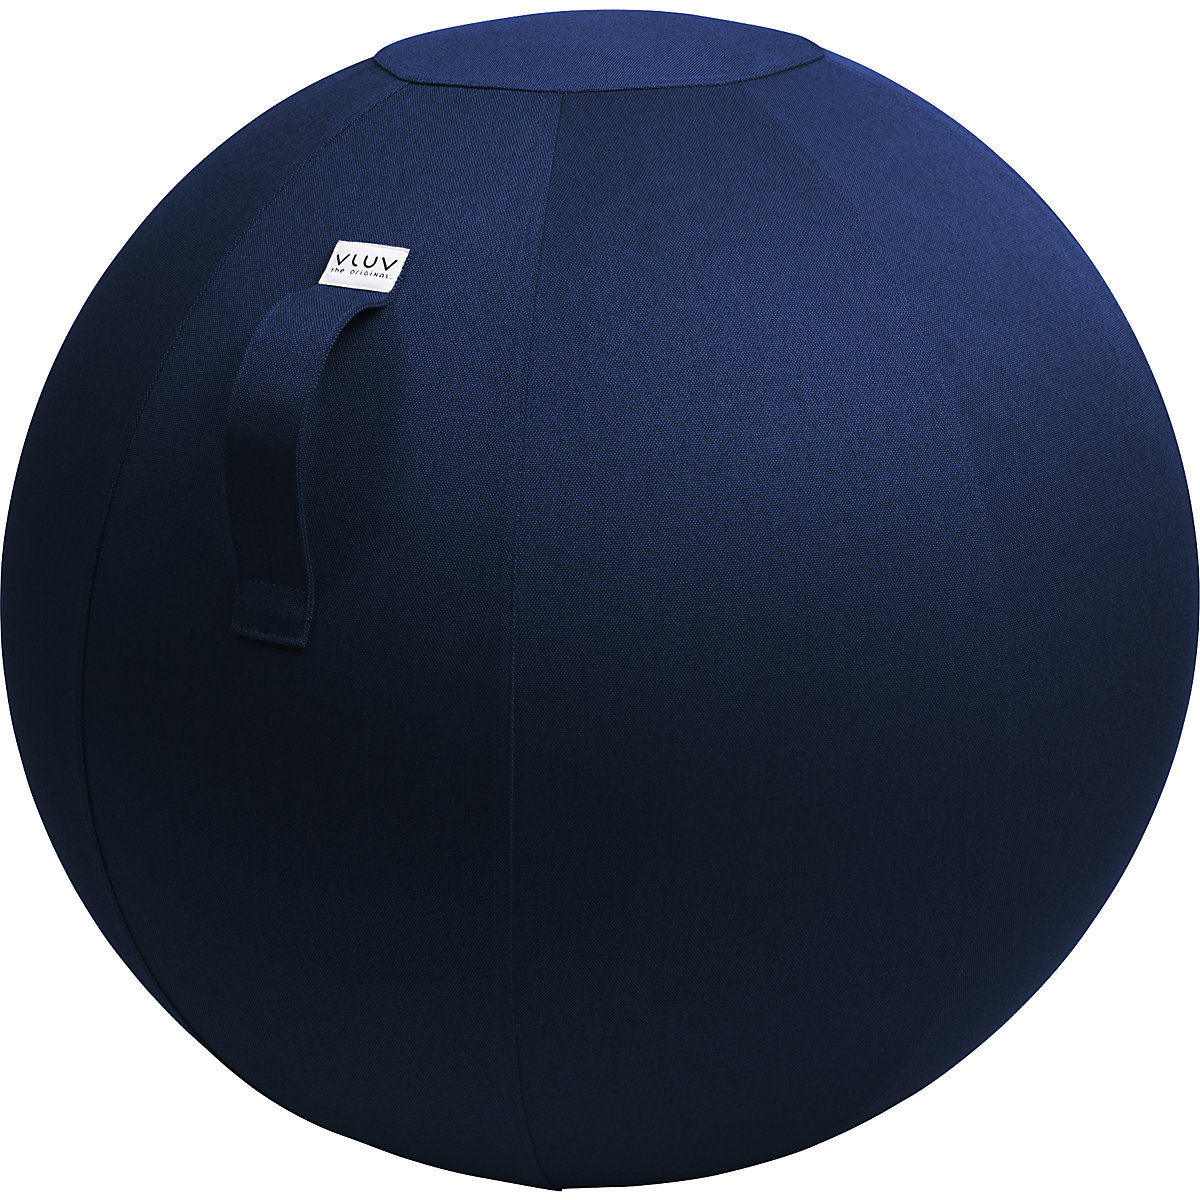 Žoga za sedenje LEIV – VLUV, prevleka iz platnu podobnega blaga, 700 – 750 mm, kraljevsko modre barve-7